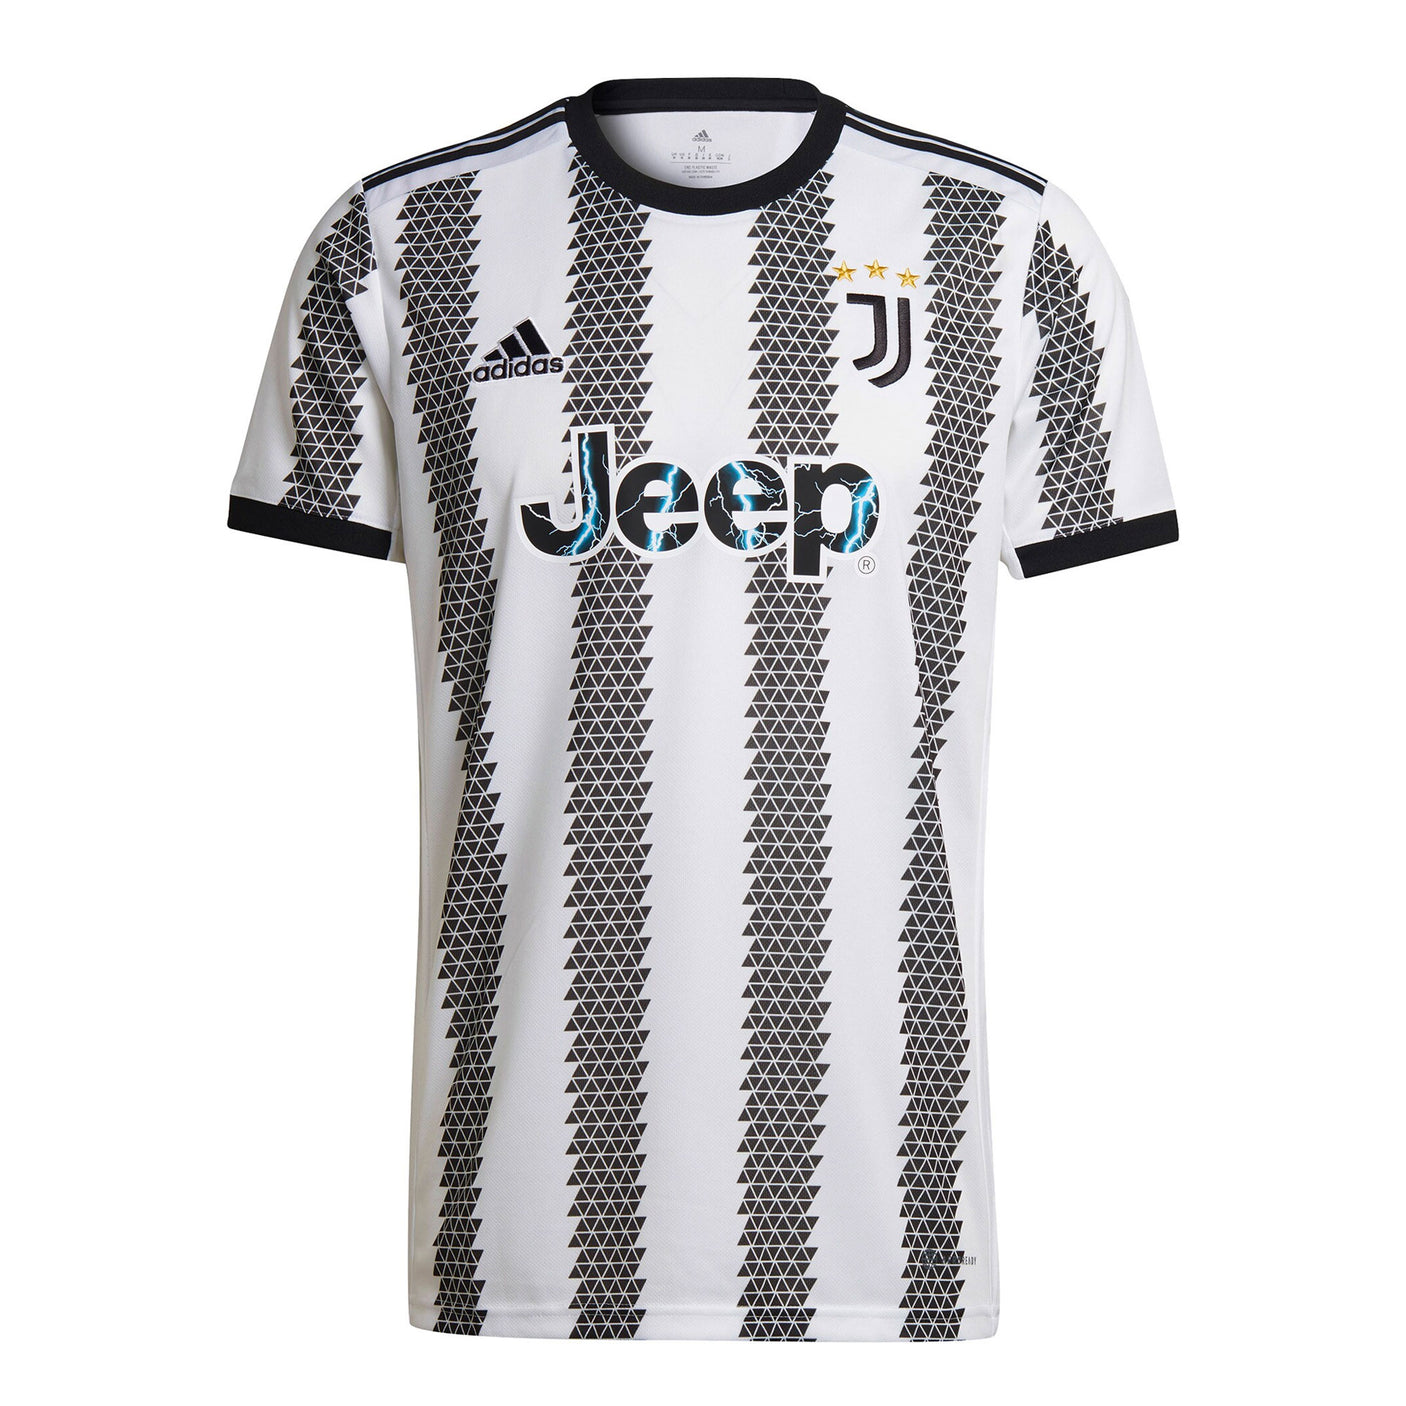 adidas Men's Juventus 2022/23 Home Jersey White/Black Front